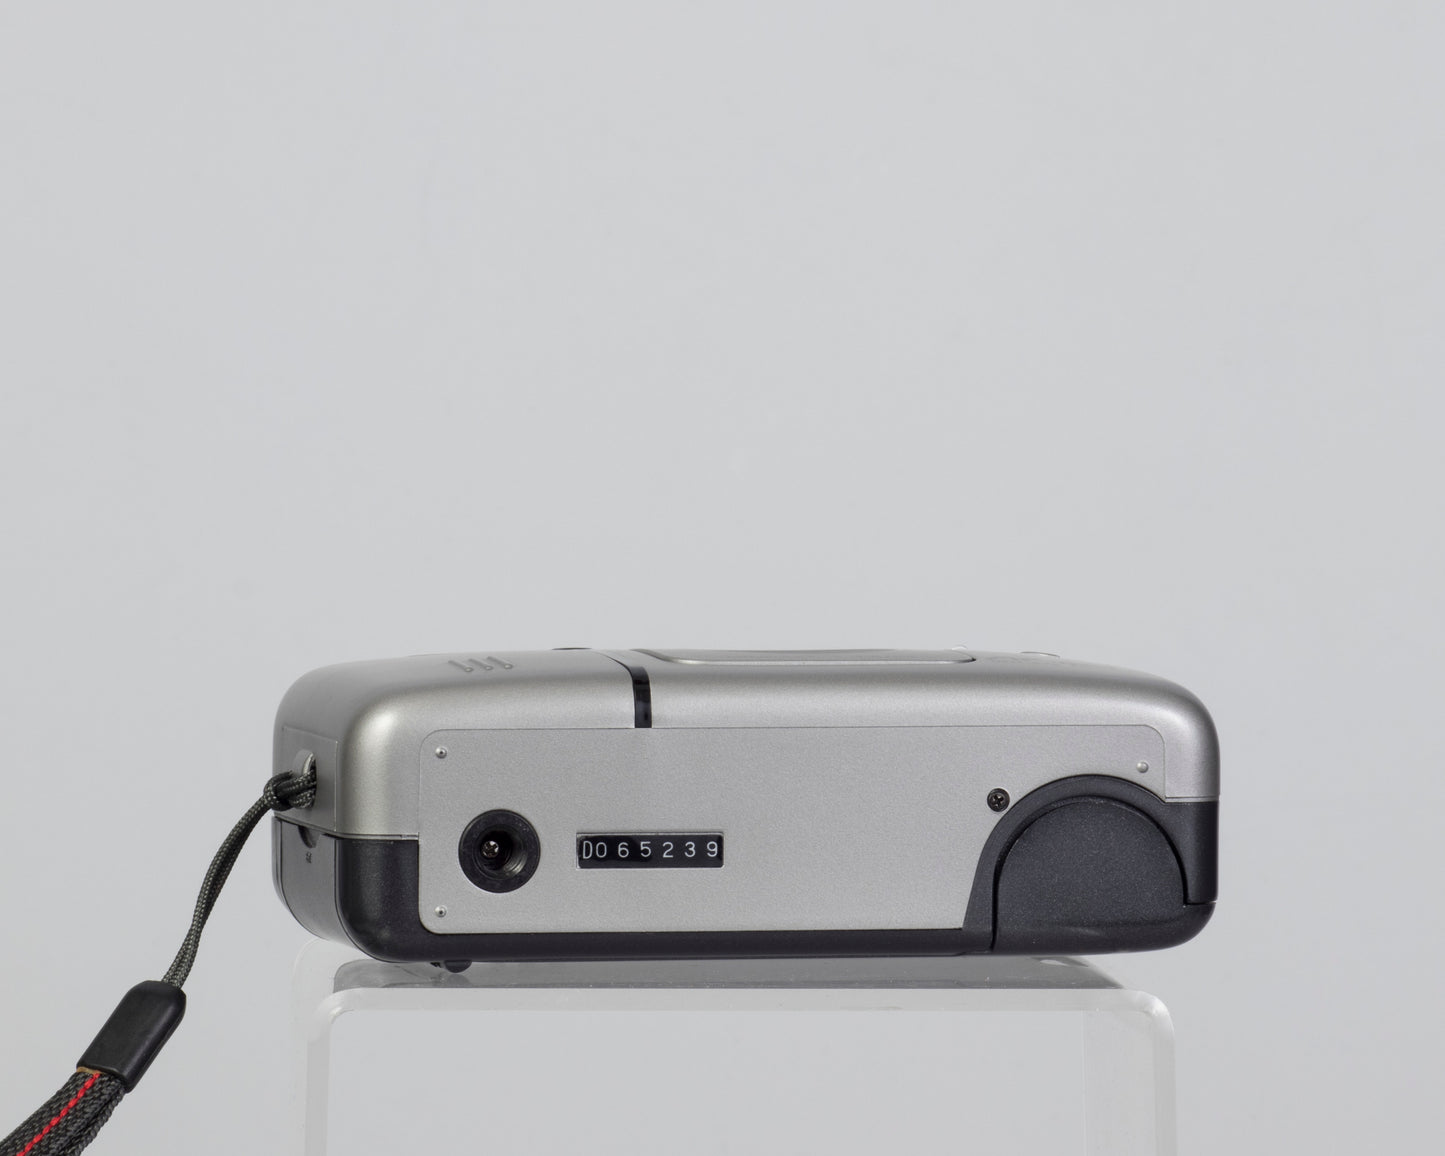 Minox AF-Mini compact 35mm film camera (serial D065239)